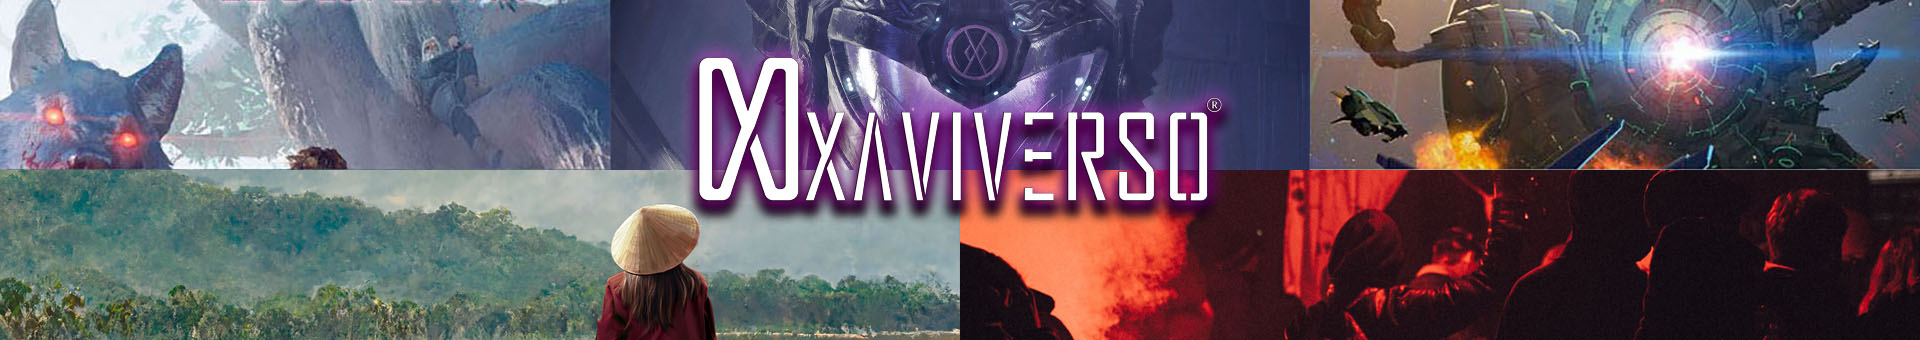 El XaviVerso es la comunidad y tienda online del universo literario transmedia del escritor Xavier Marcé, donde todo está conectado.